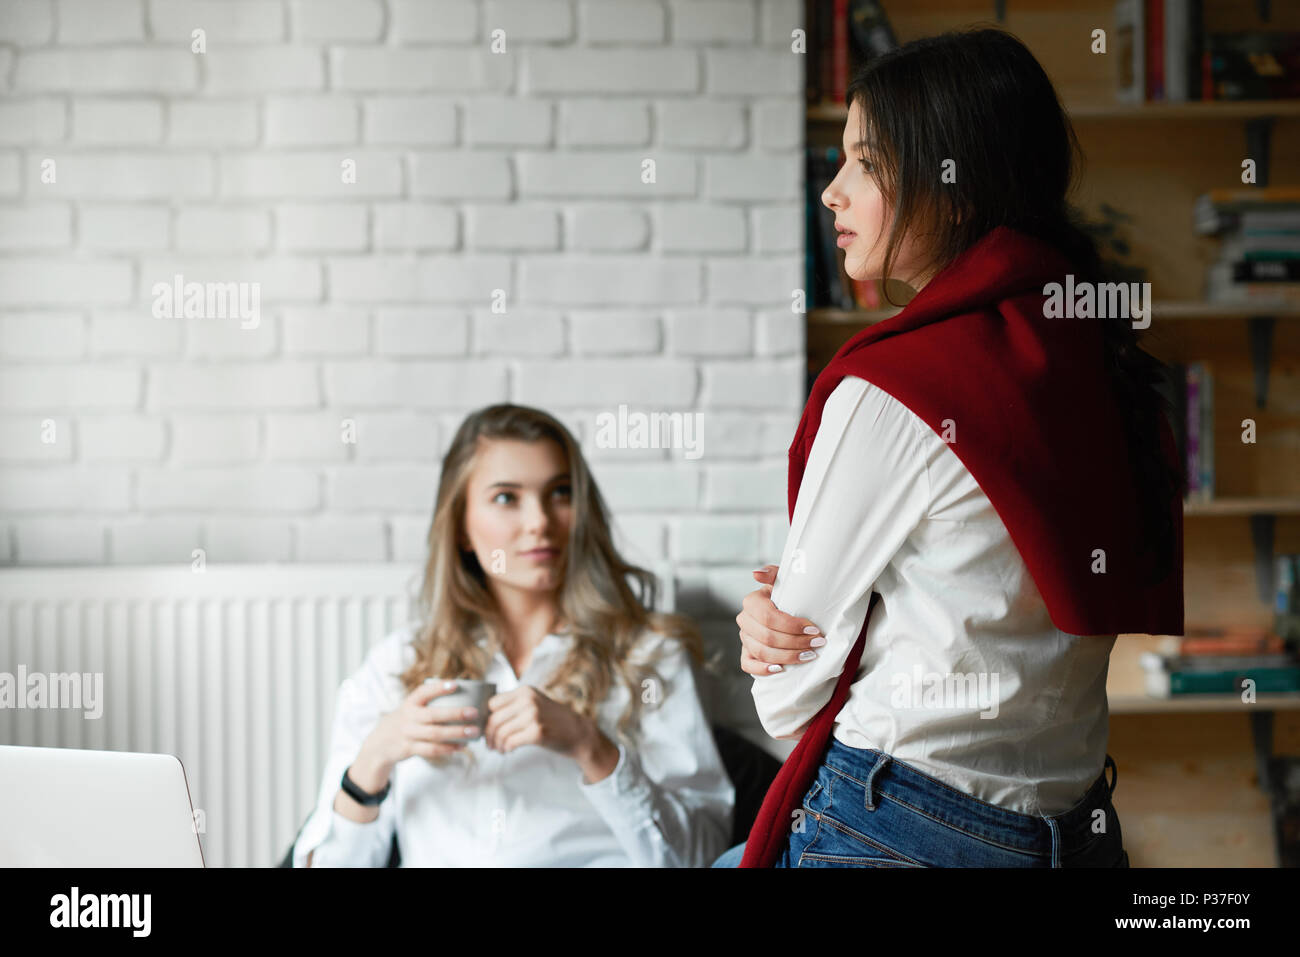 Deux jeunes amis féminins portant des chemises blanches classique décontracté communiquer,travailler avec ordinateur portable, assis dans cette chambre spacieuse avec des murs blancs. Boire du café, de l'apprentissage. D'affaires, des pigistes. Banque D'Images